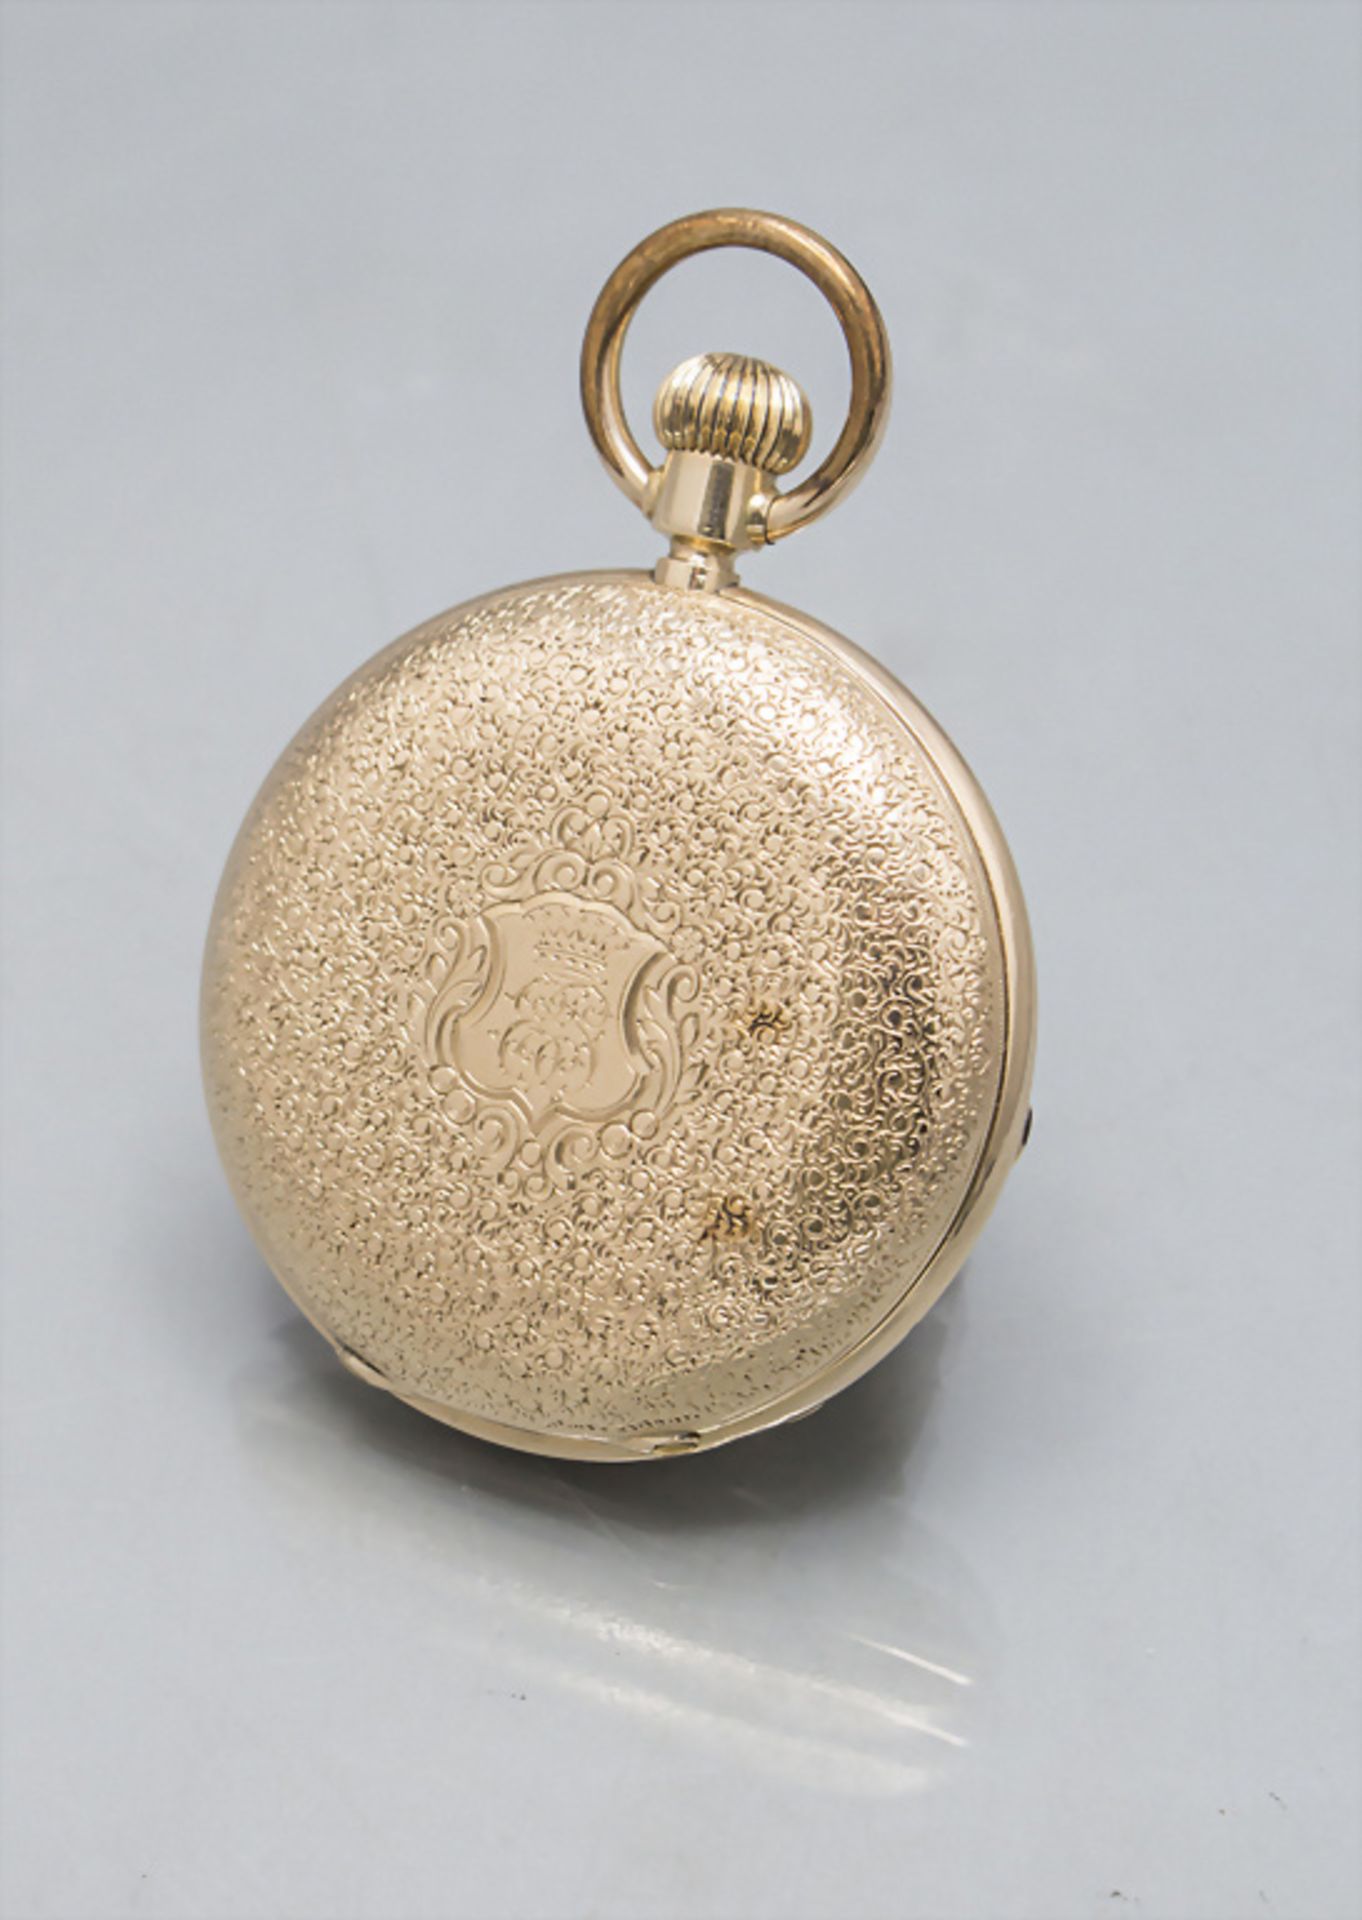 Savonette Taschenuhr Chronometer / A 14 ct gold open face pocket watch, Gebr. Eppner, Berlin, ... - Image 9 of 9